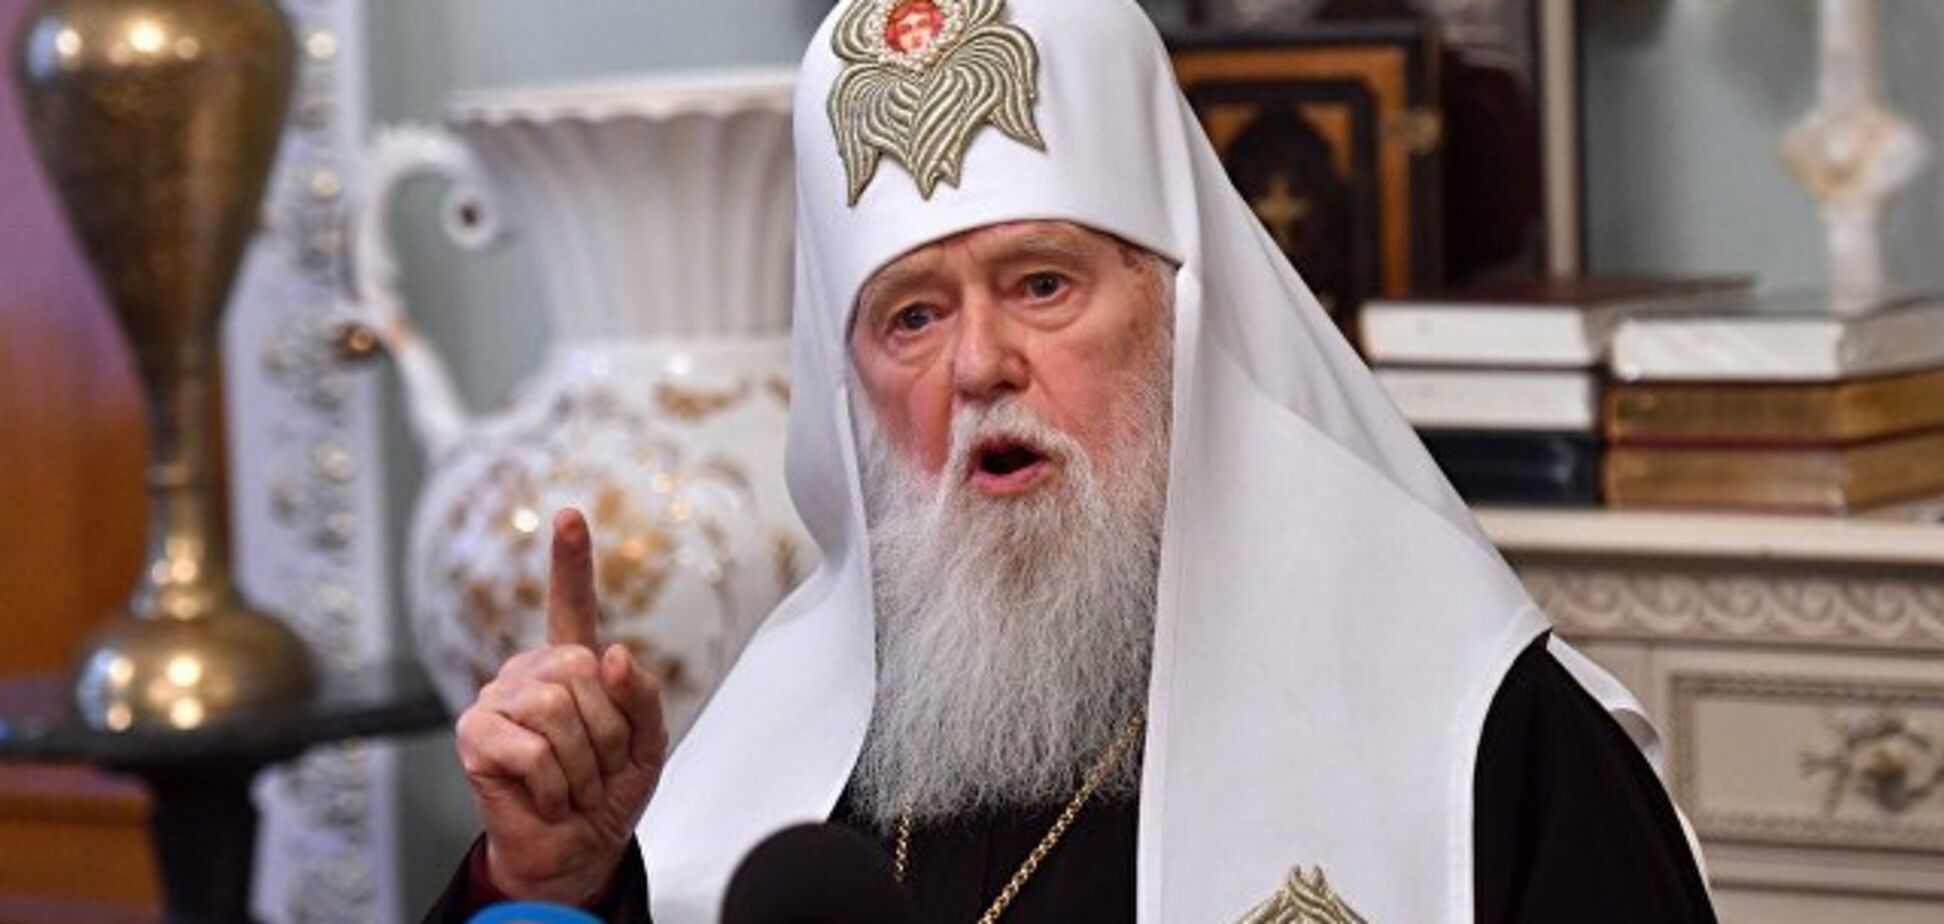 Филарет теперь не патриарх: главе Украинской церкви дали новый титул 